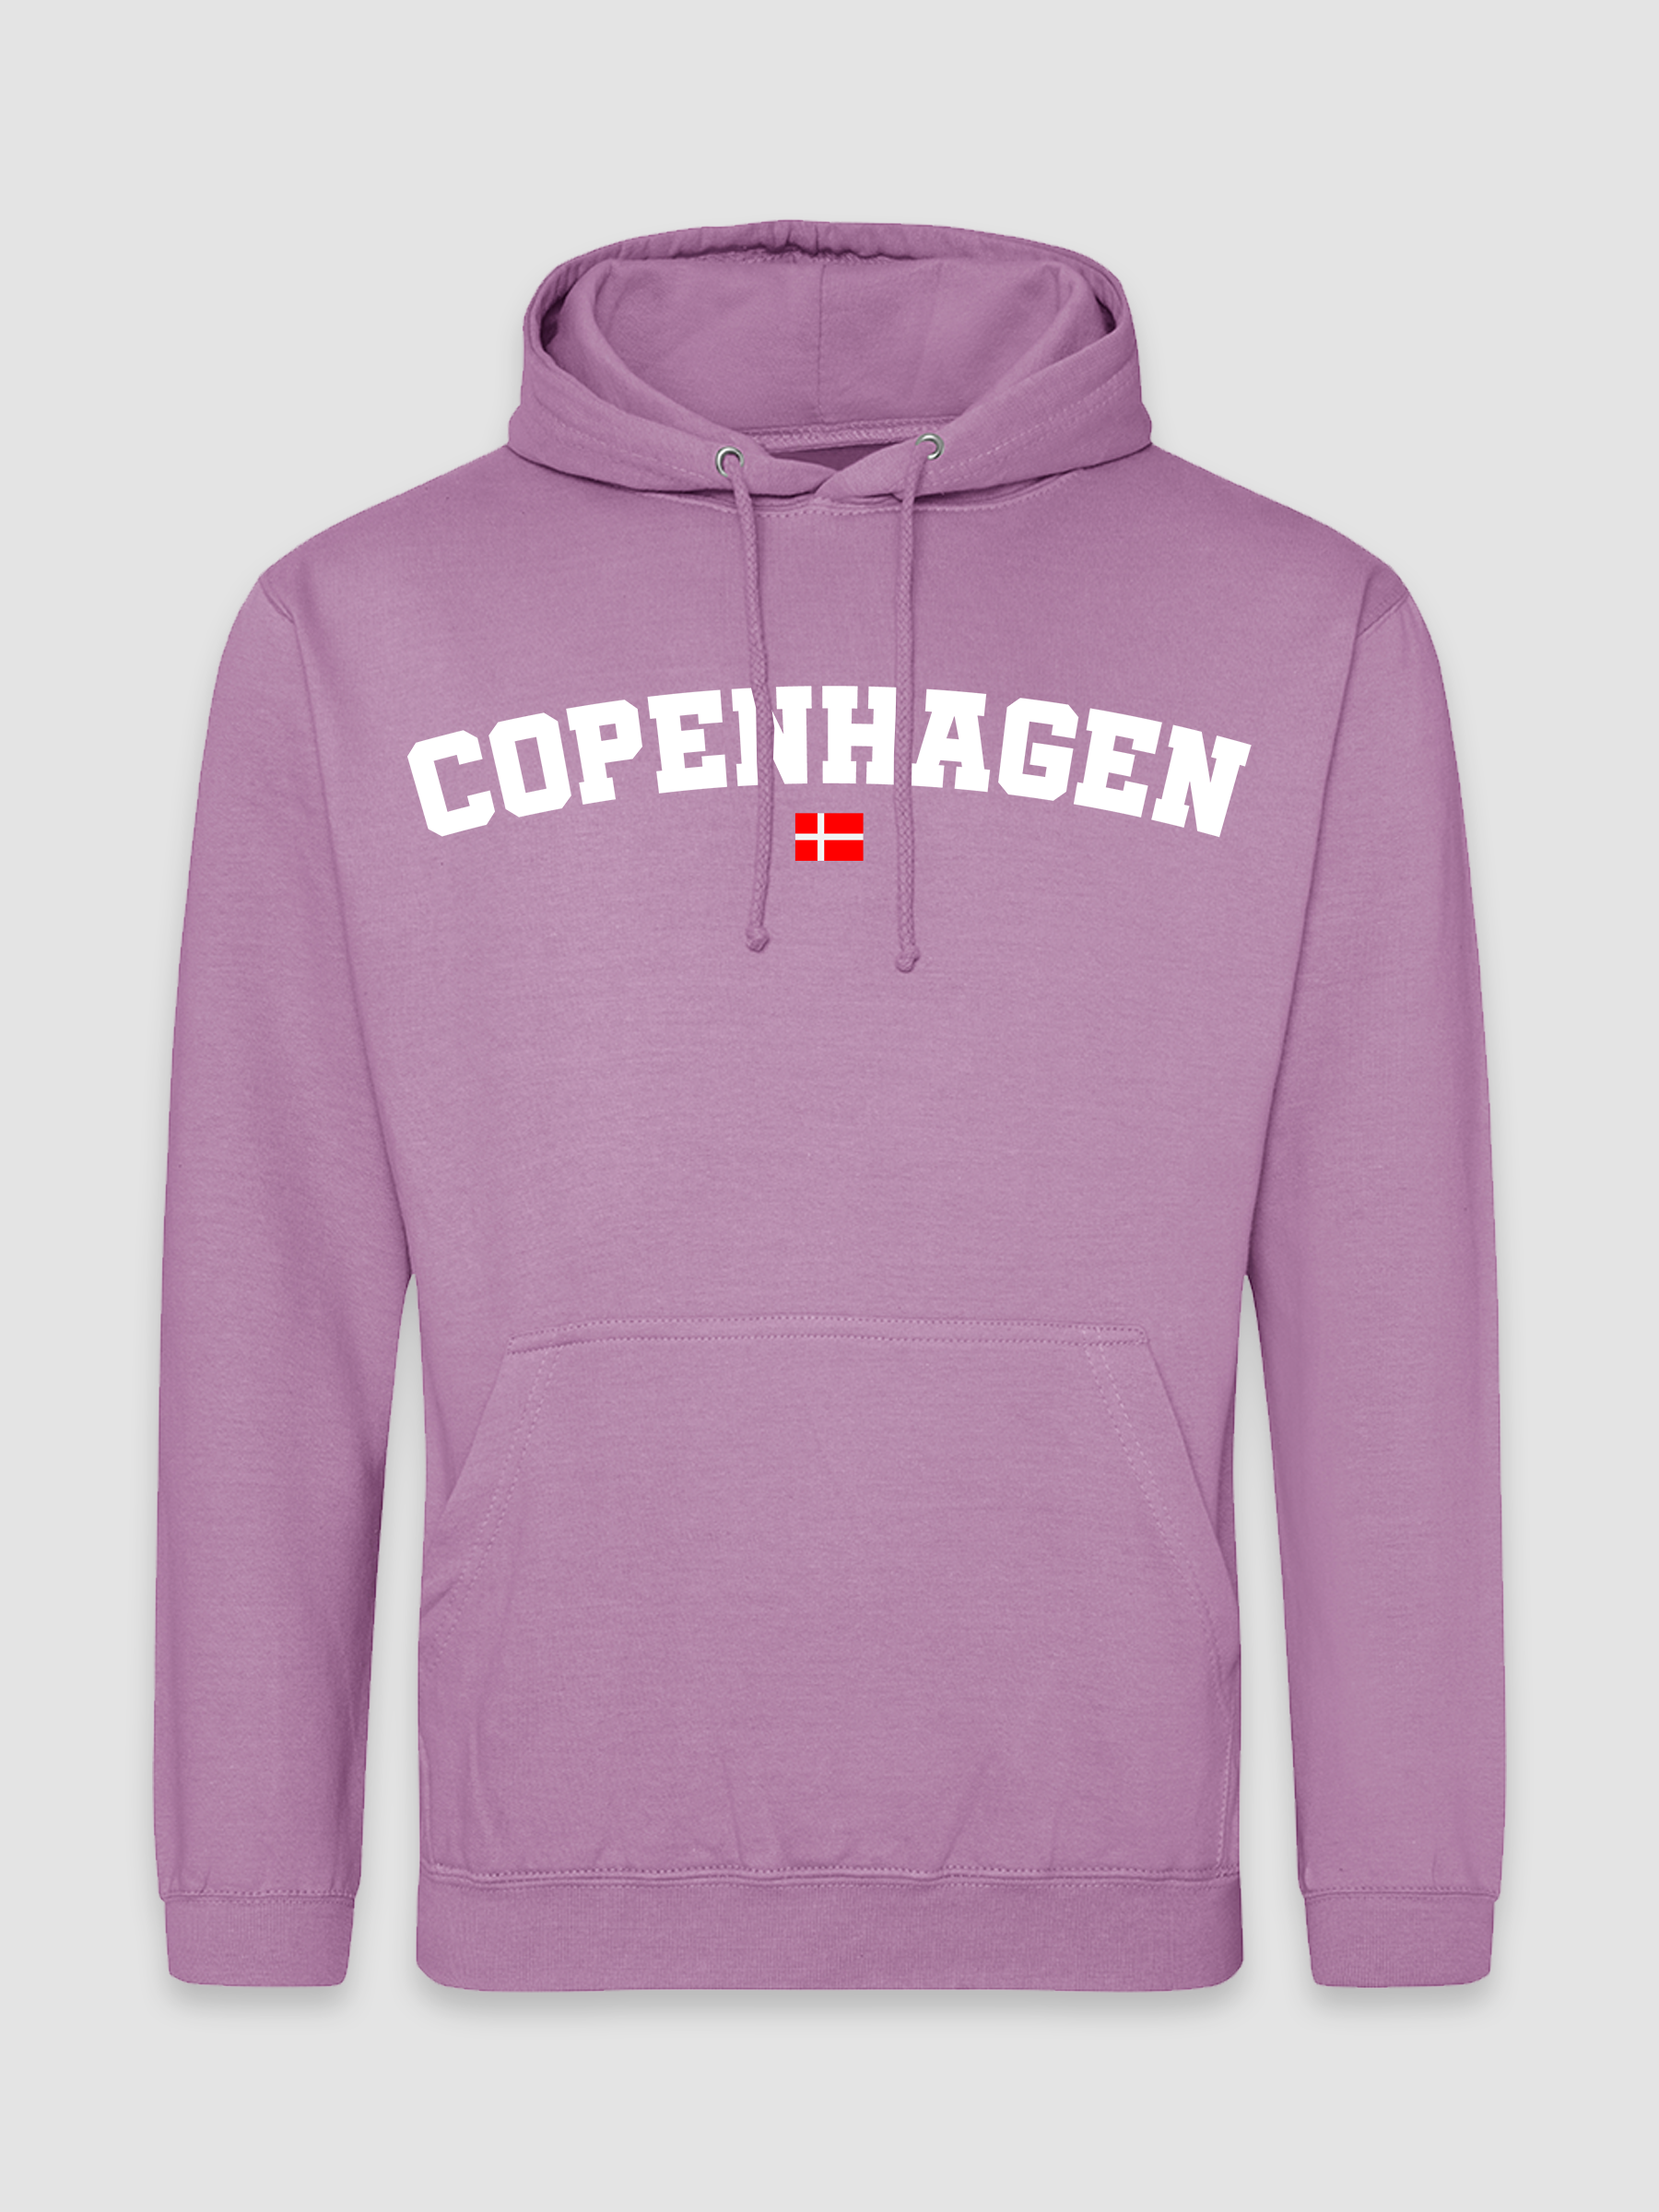 Copenhagen - Lavendel Hoodie